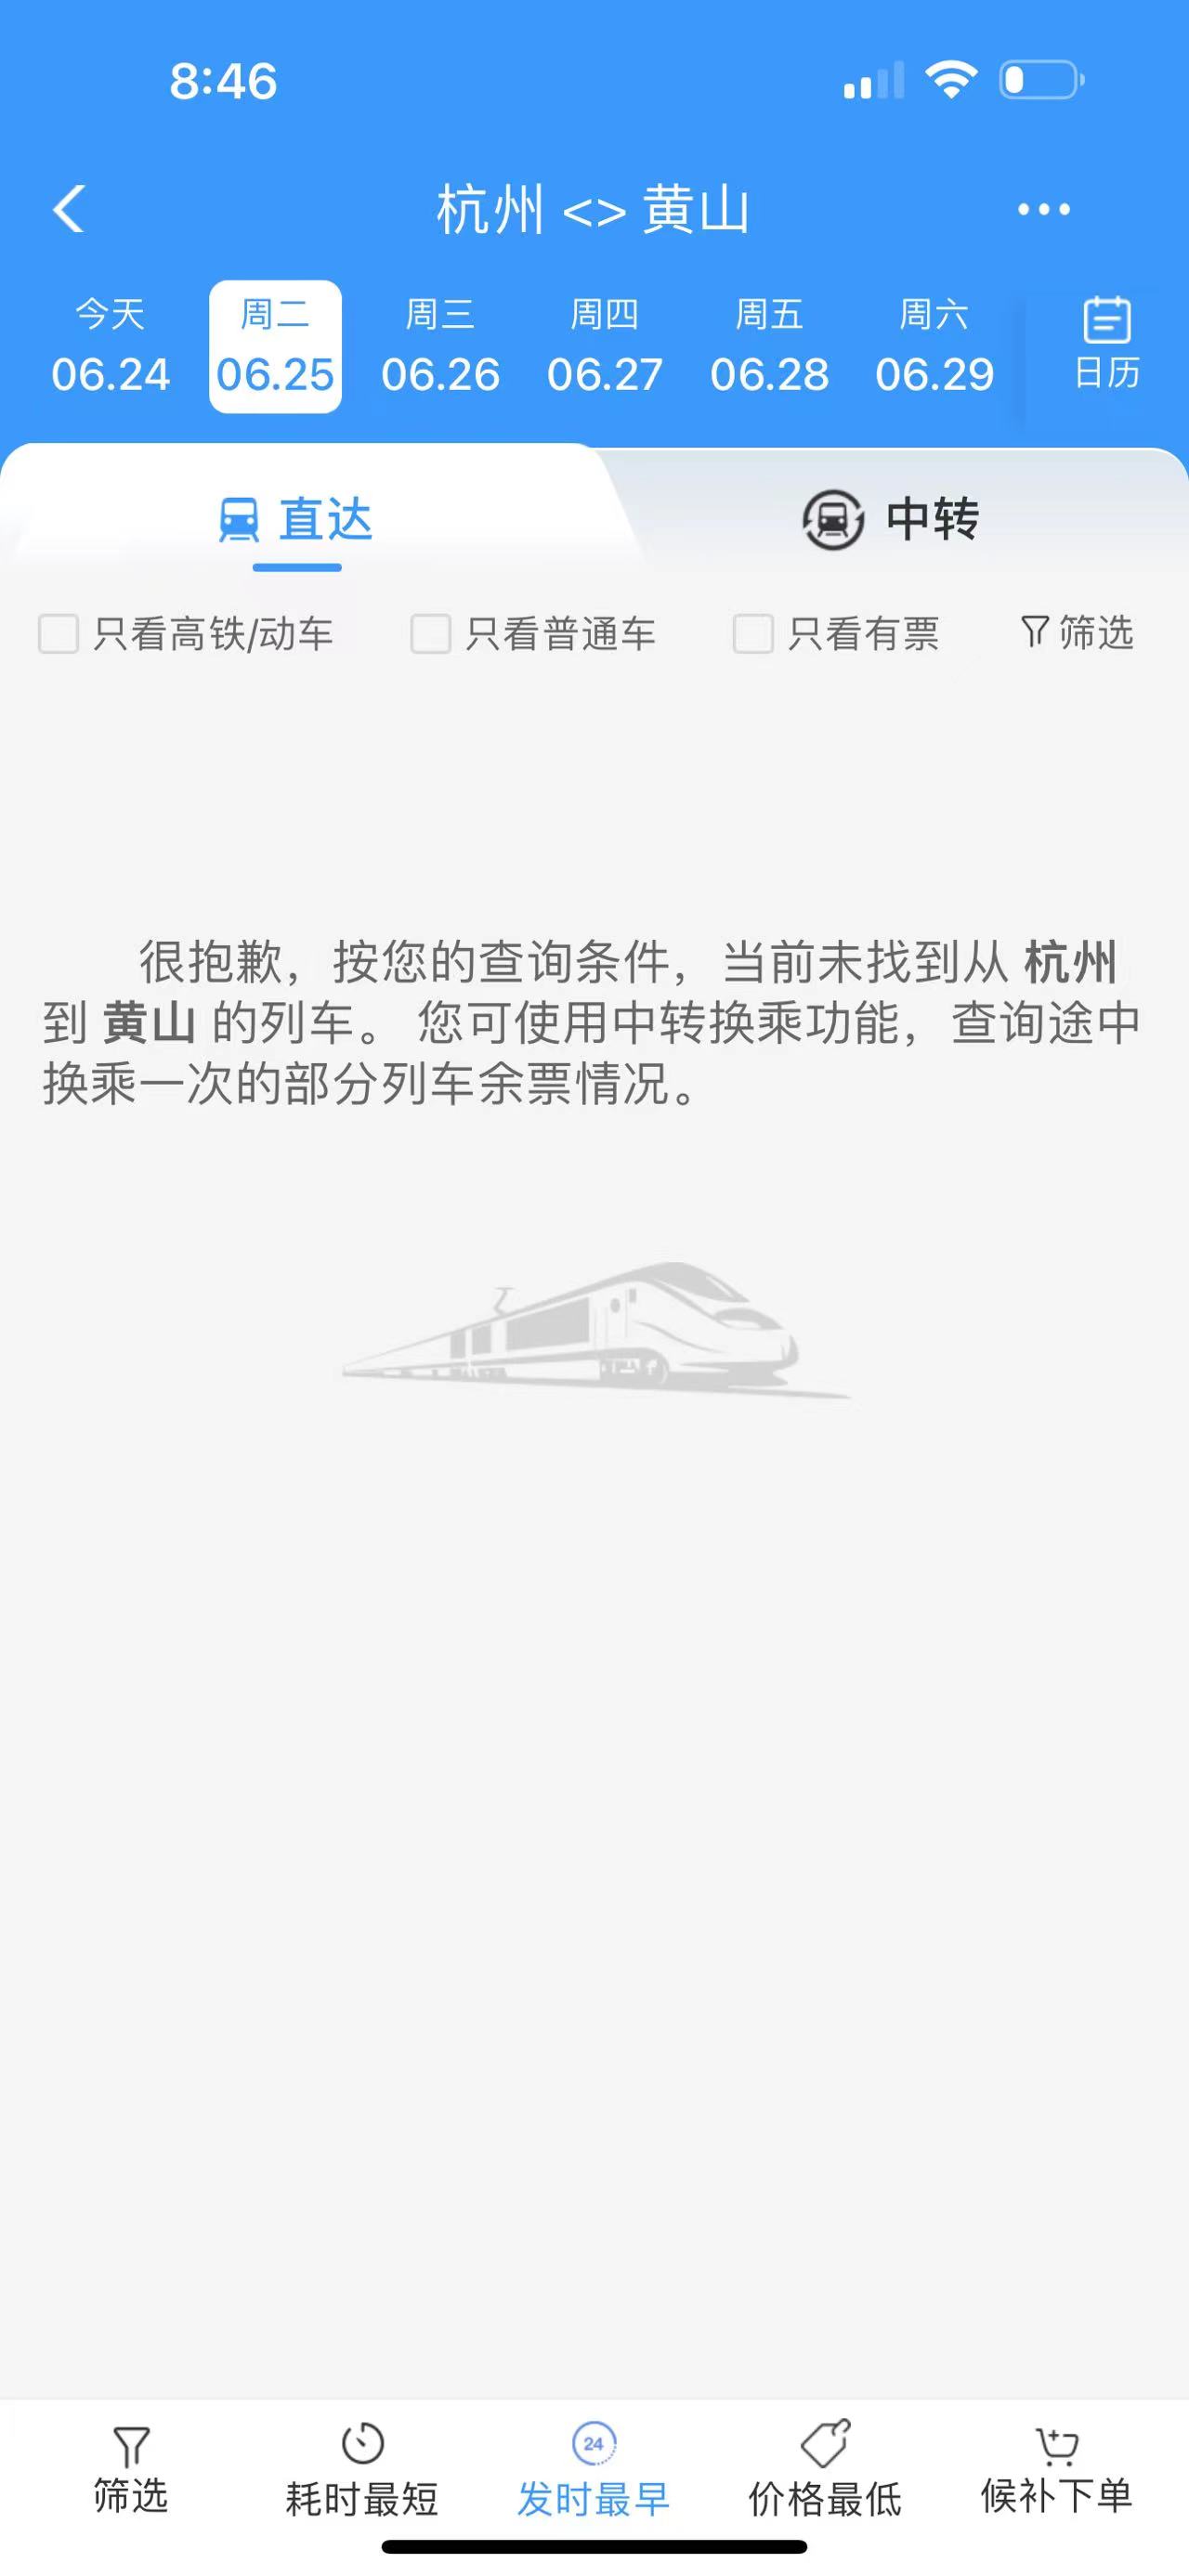 安徽浙江暴雨致部分铁路区段水灾，列车停运至26日插图(1)